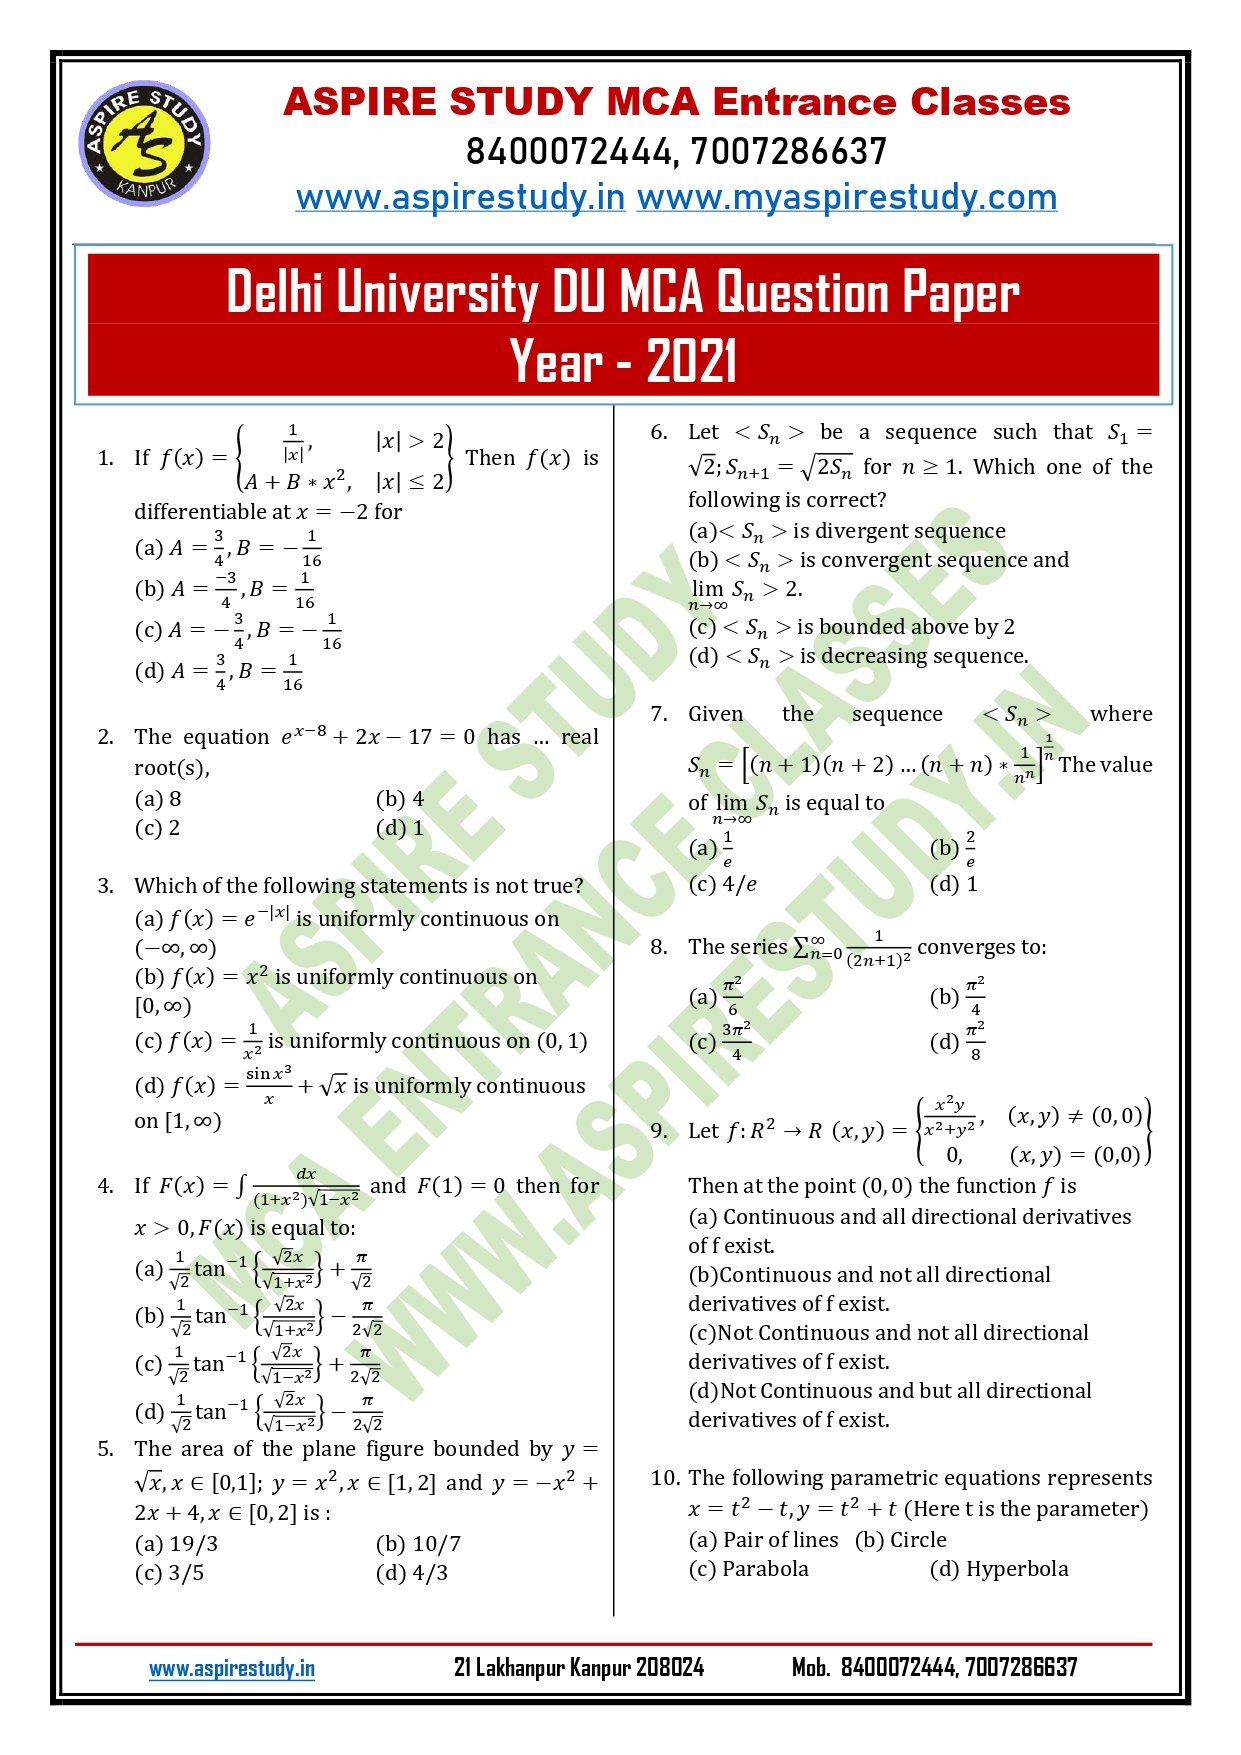 DU MCA Question Paper 2021